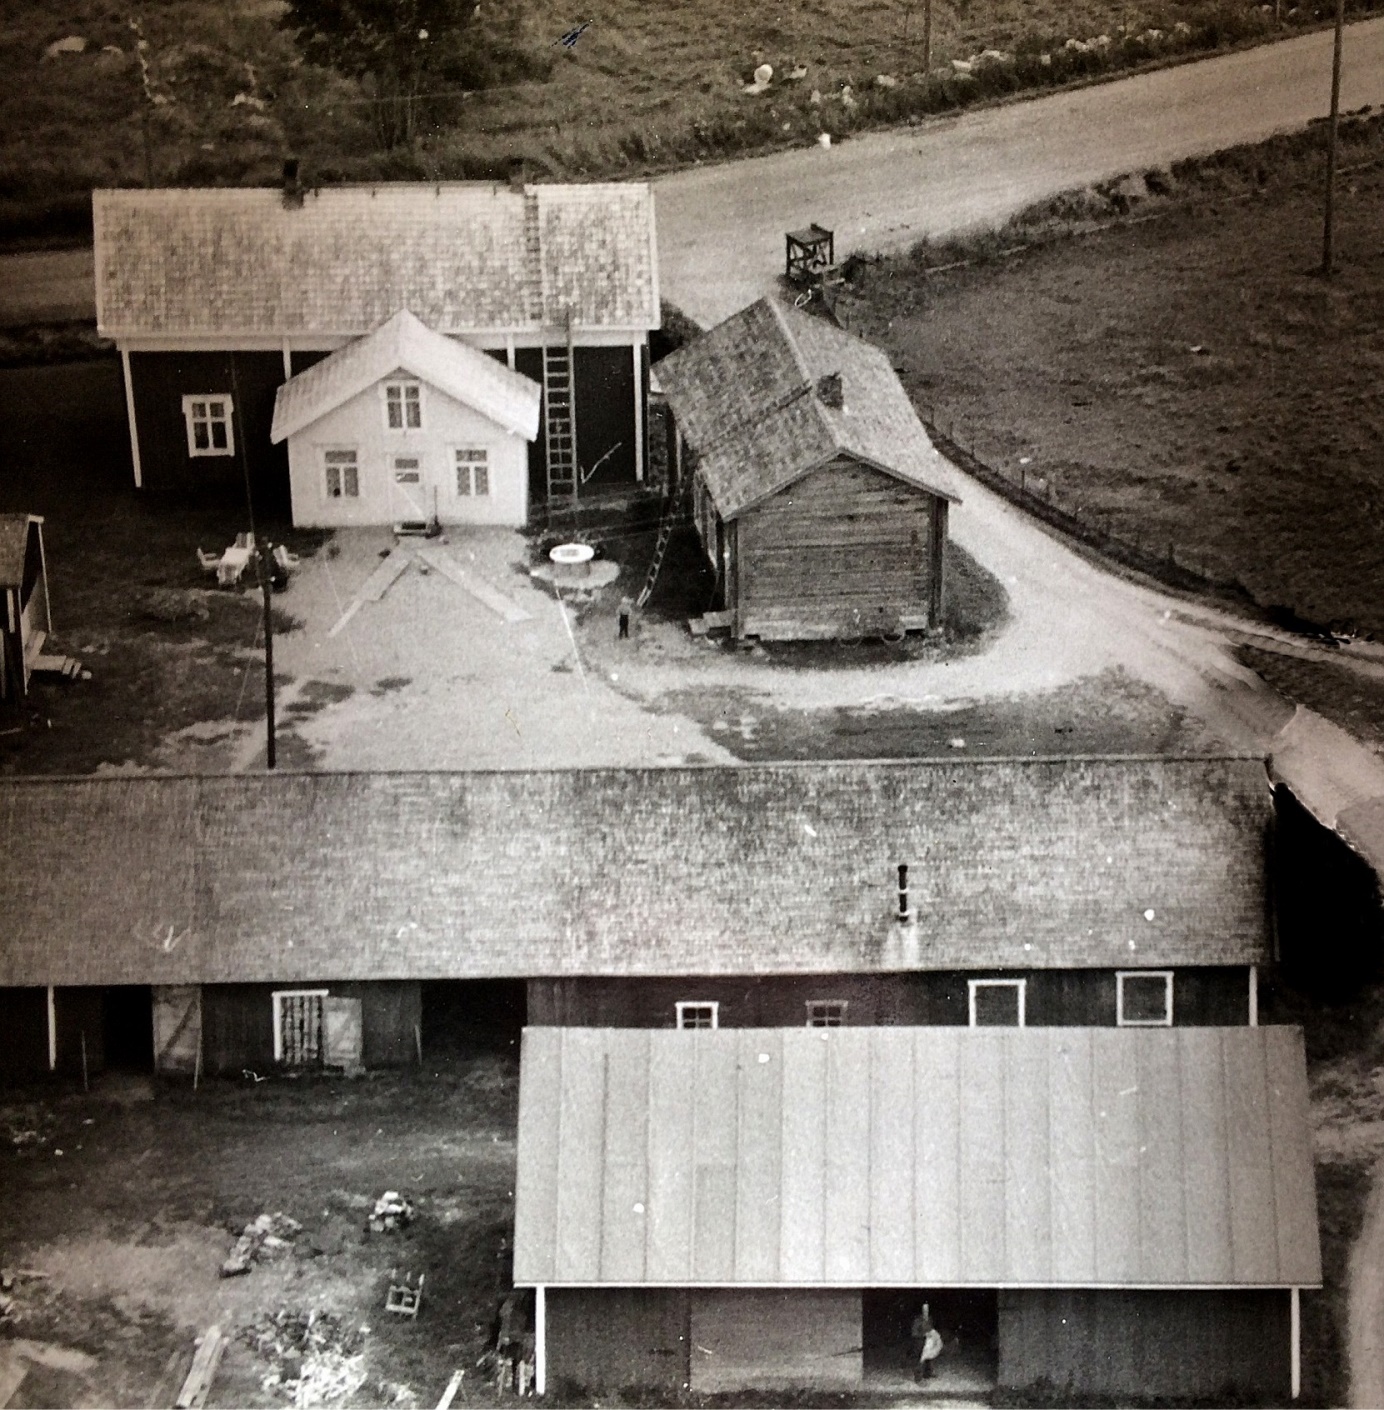 På flygfotot från 1960-talet ser vi hur nära varandra de båda Antas-gårdarna stod. Gården längs med vägen flyttades hit i slutet på 1800-talet men blev bebodd i slutet av 1940-talet. Den äldre gården som stod med gaveln mot vägen revs på 1970-talet av Arvid Dahlroos.